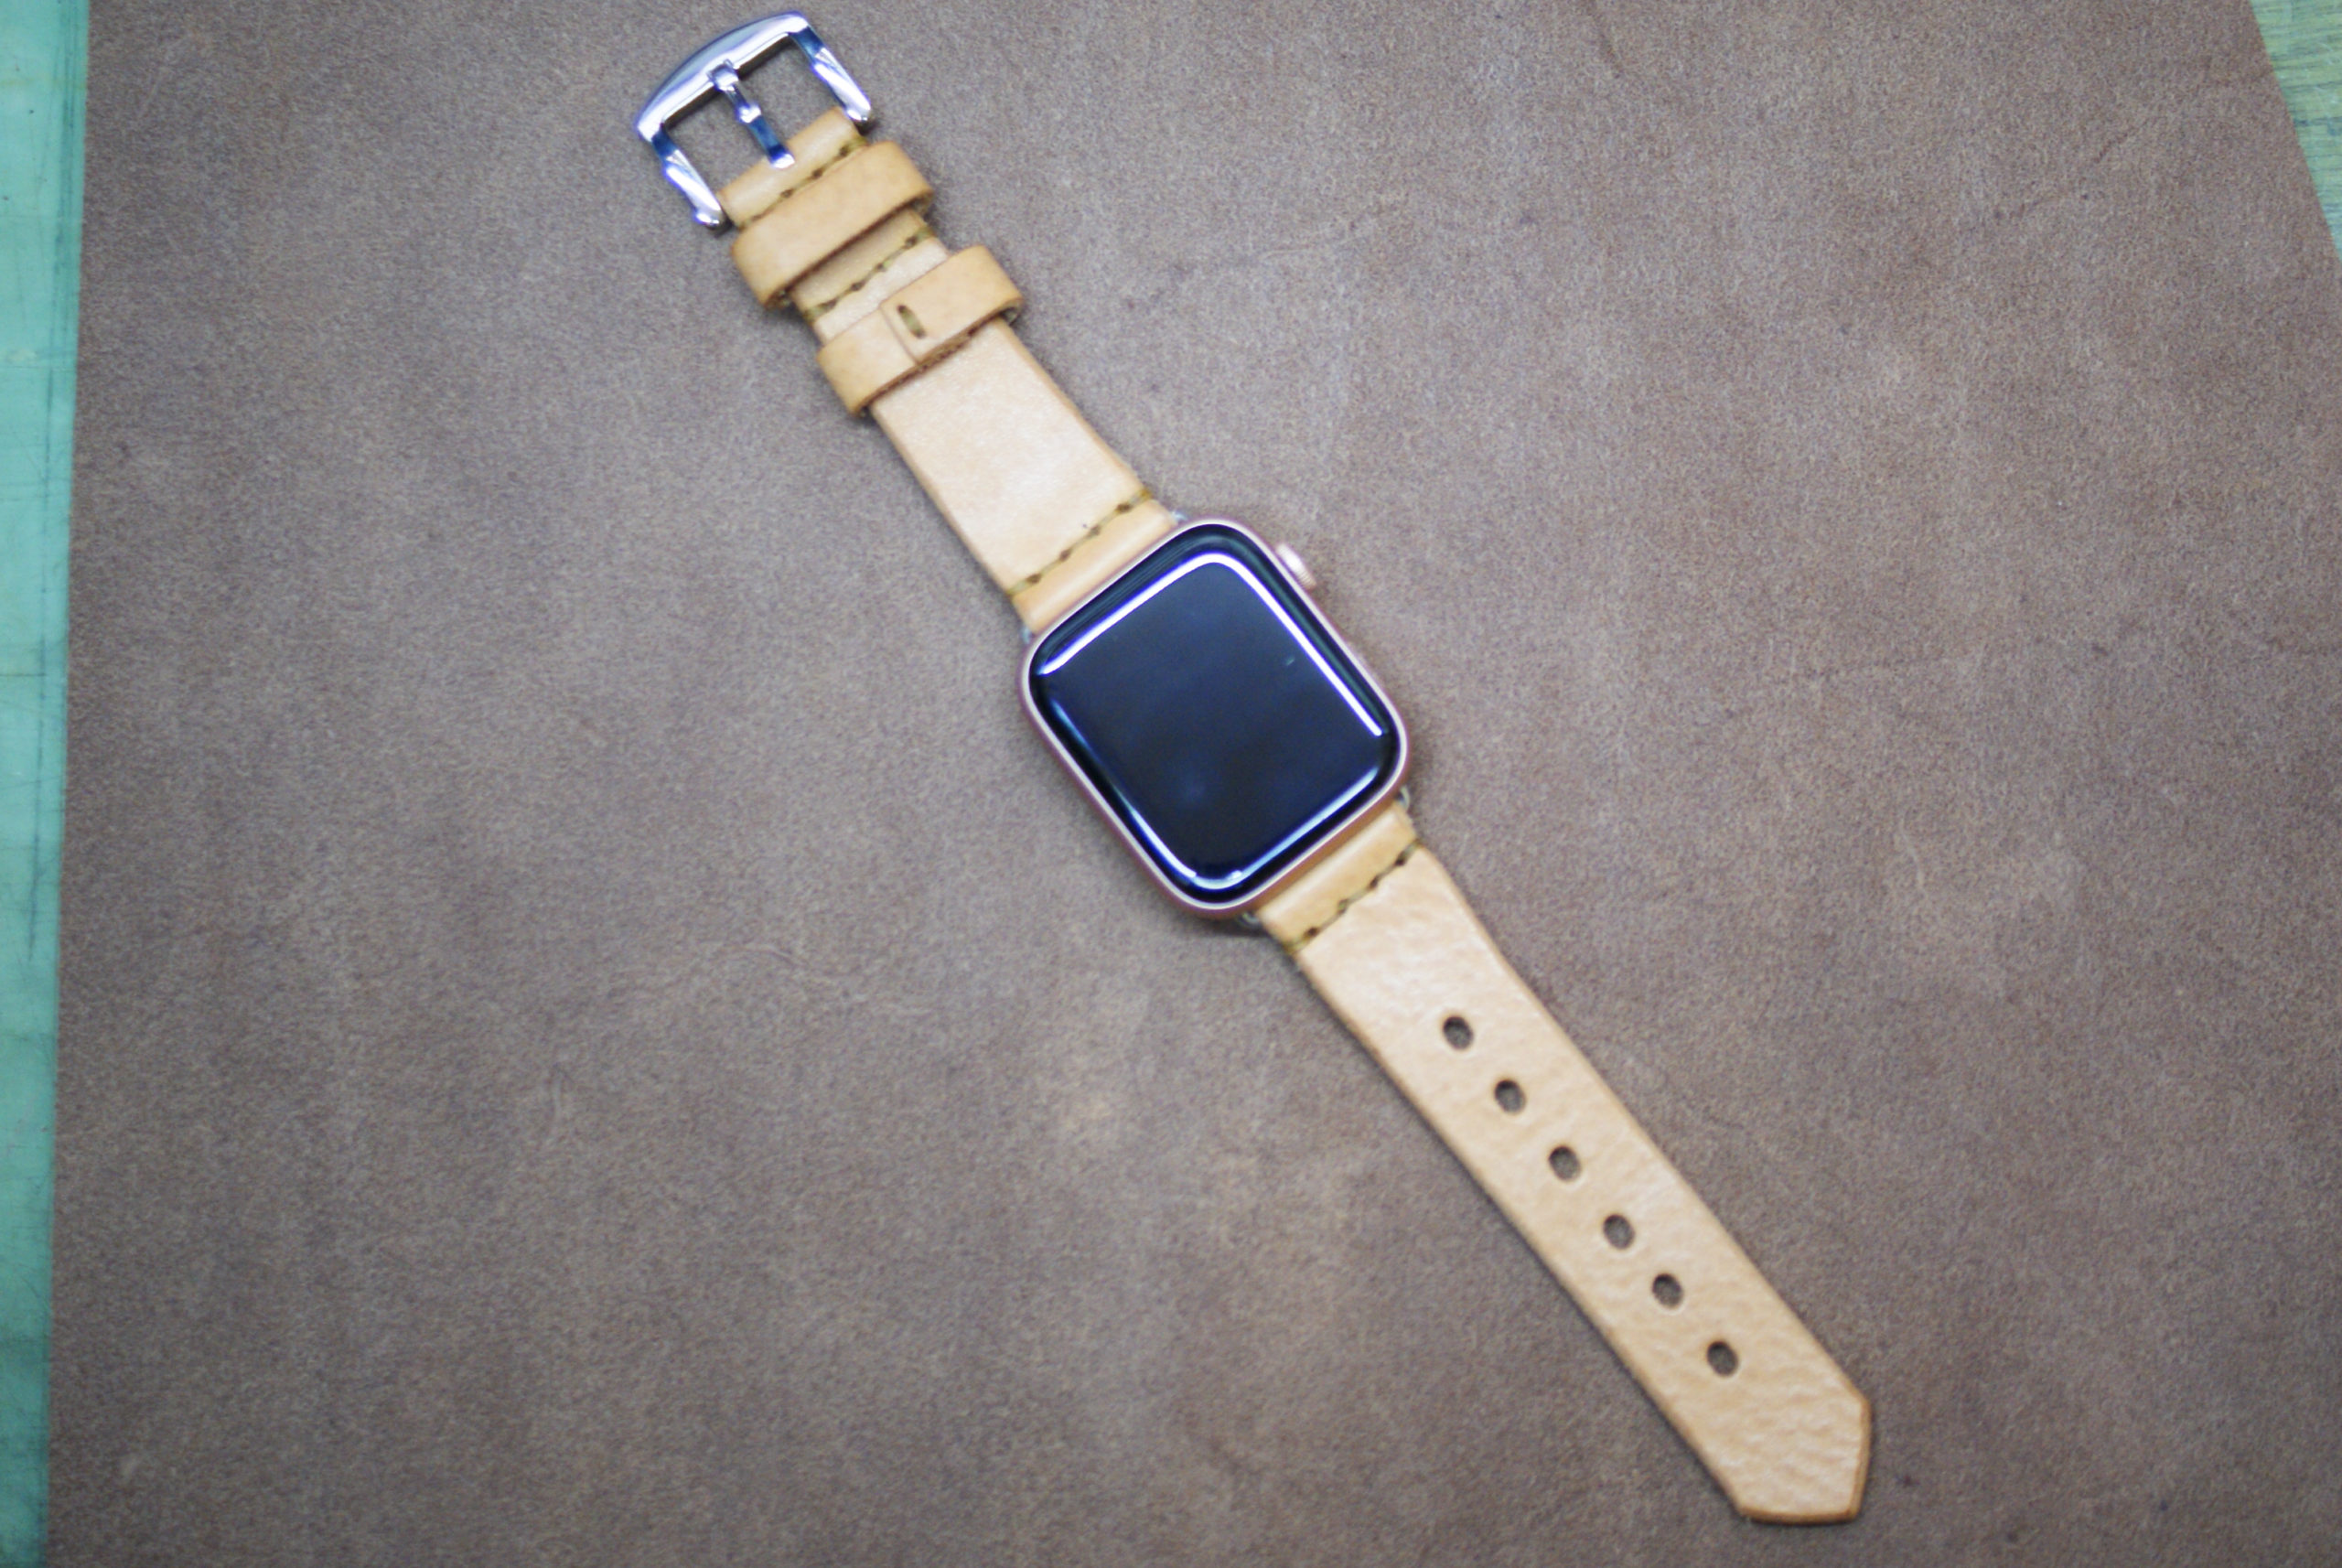 アップルウォッチバンド 革製 Apple Watch Bands in Leather ナチュラル Bottega Glicine 革製品専門店